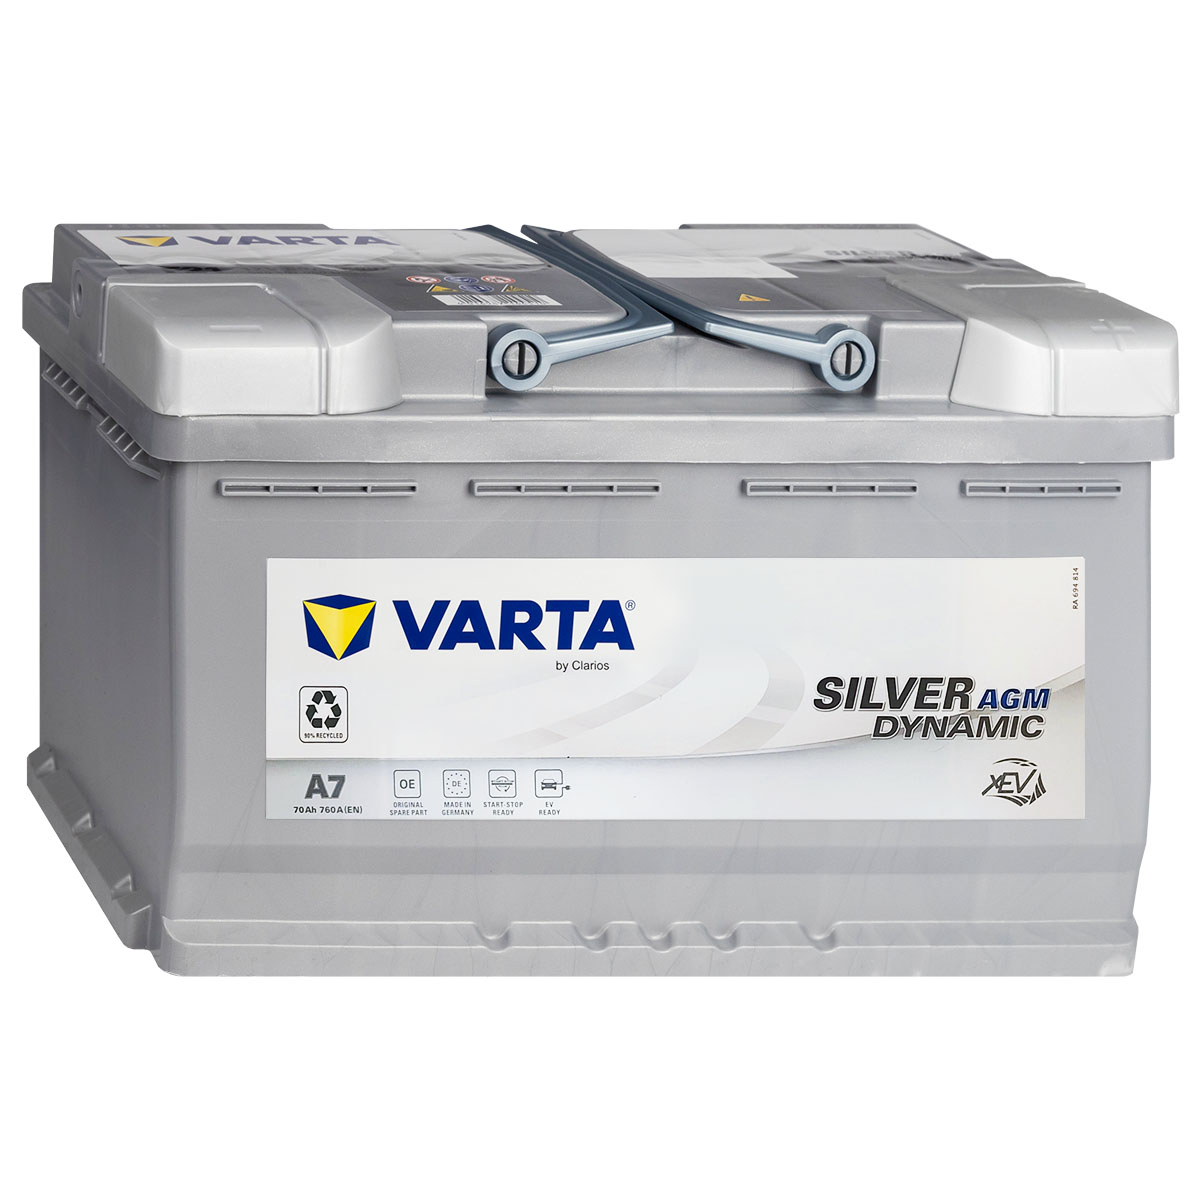 VARTA Batterien für Hyundai i10 online kaufen